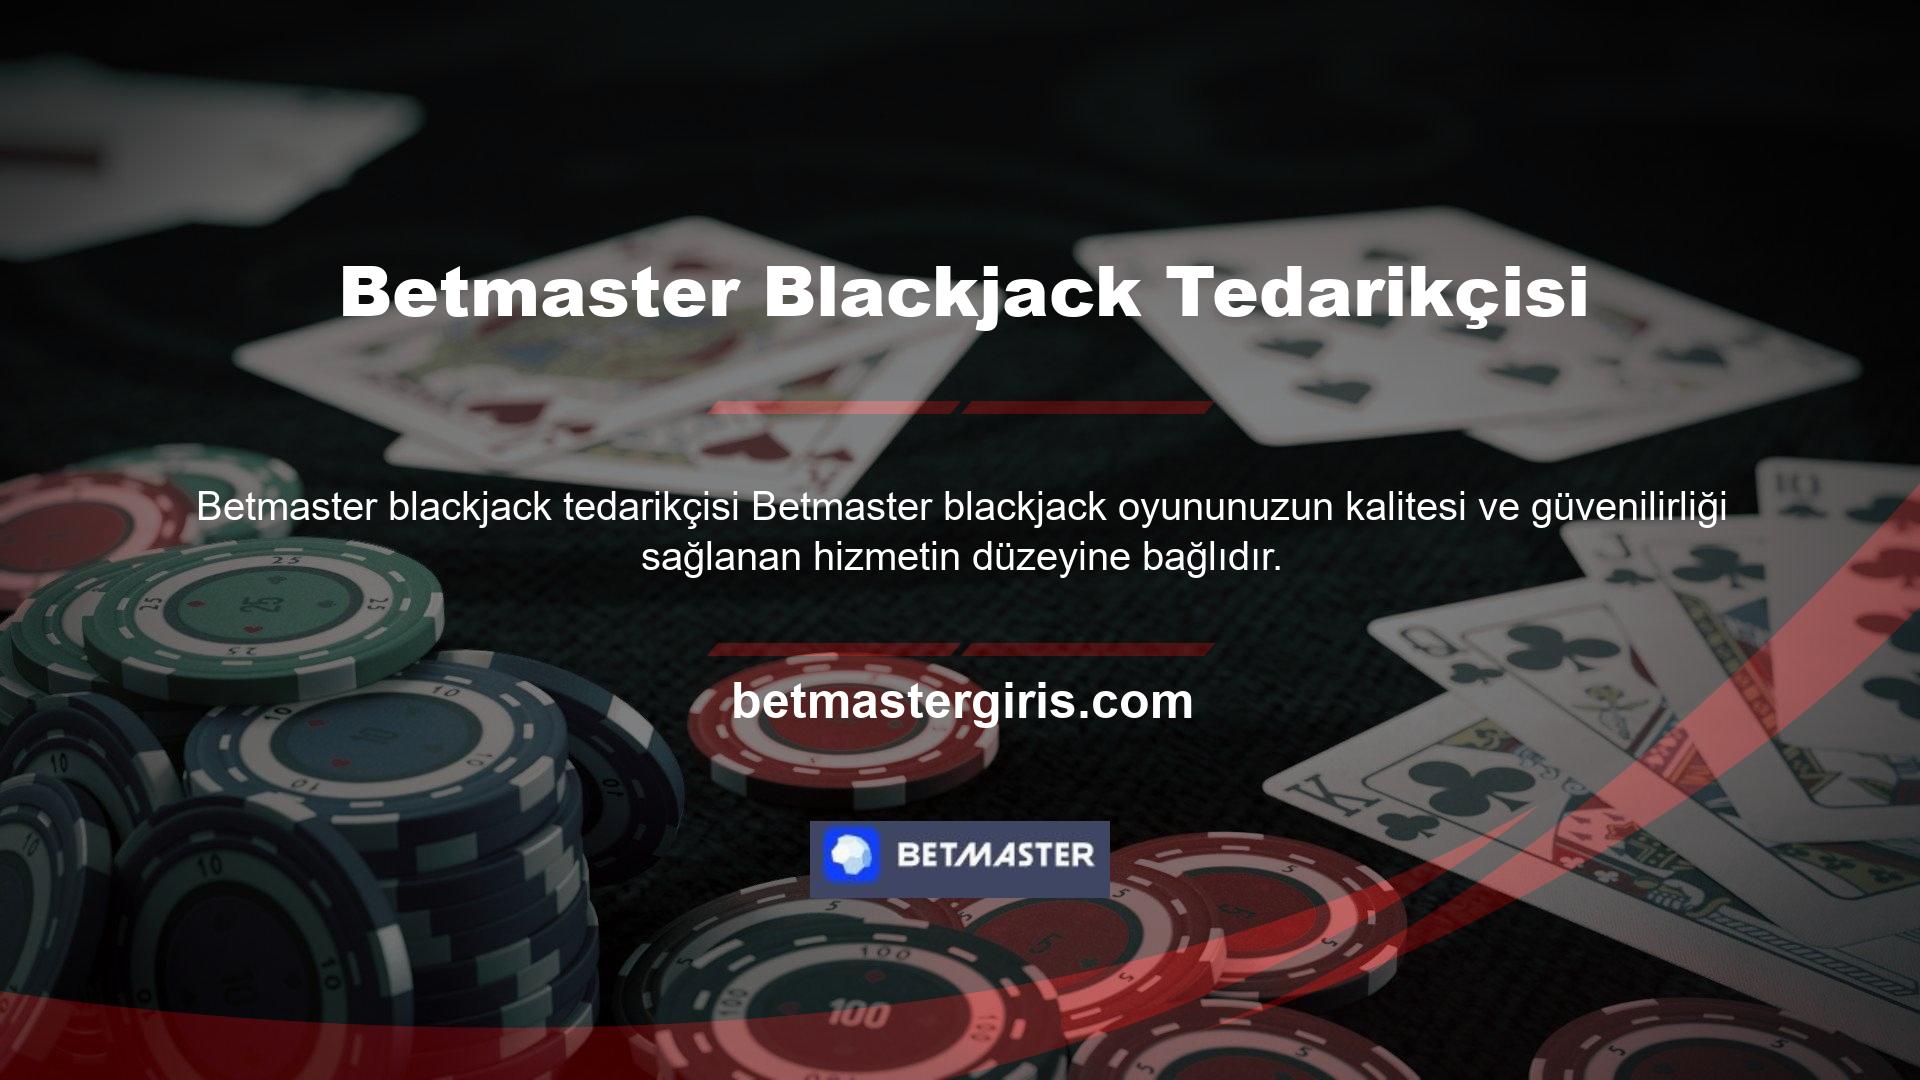 Blackjack Casinosundeki deneyiminiz, Casino sağlayıcısı tarafından büyük ölçüde geliştirilmiştirBlackjack 21, oyununuzu daha eğlenceli hale getirmek için bunu basit bir yapı etrafında birleştirir